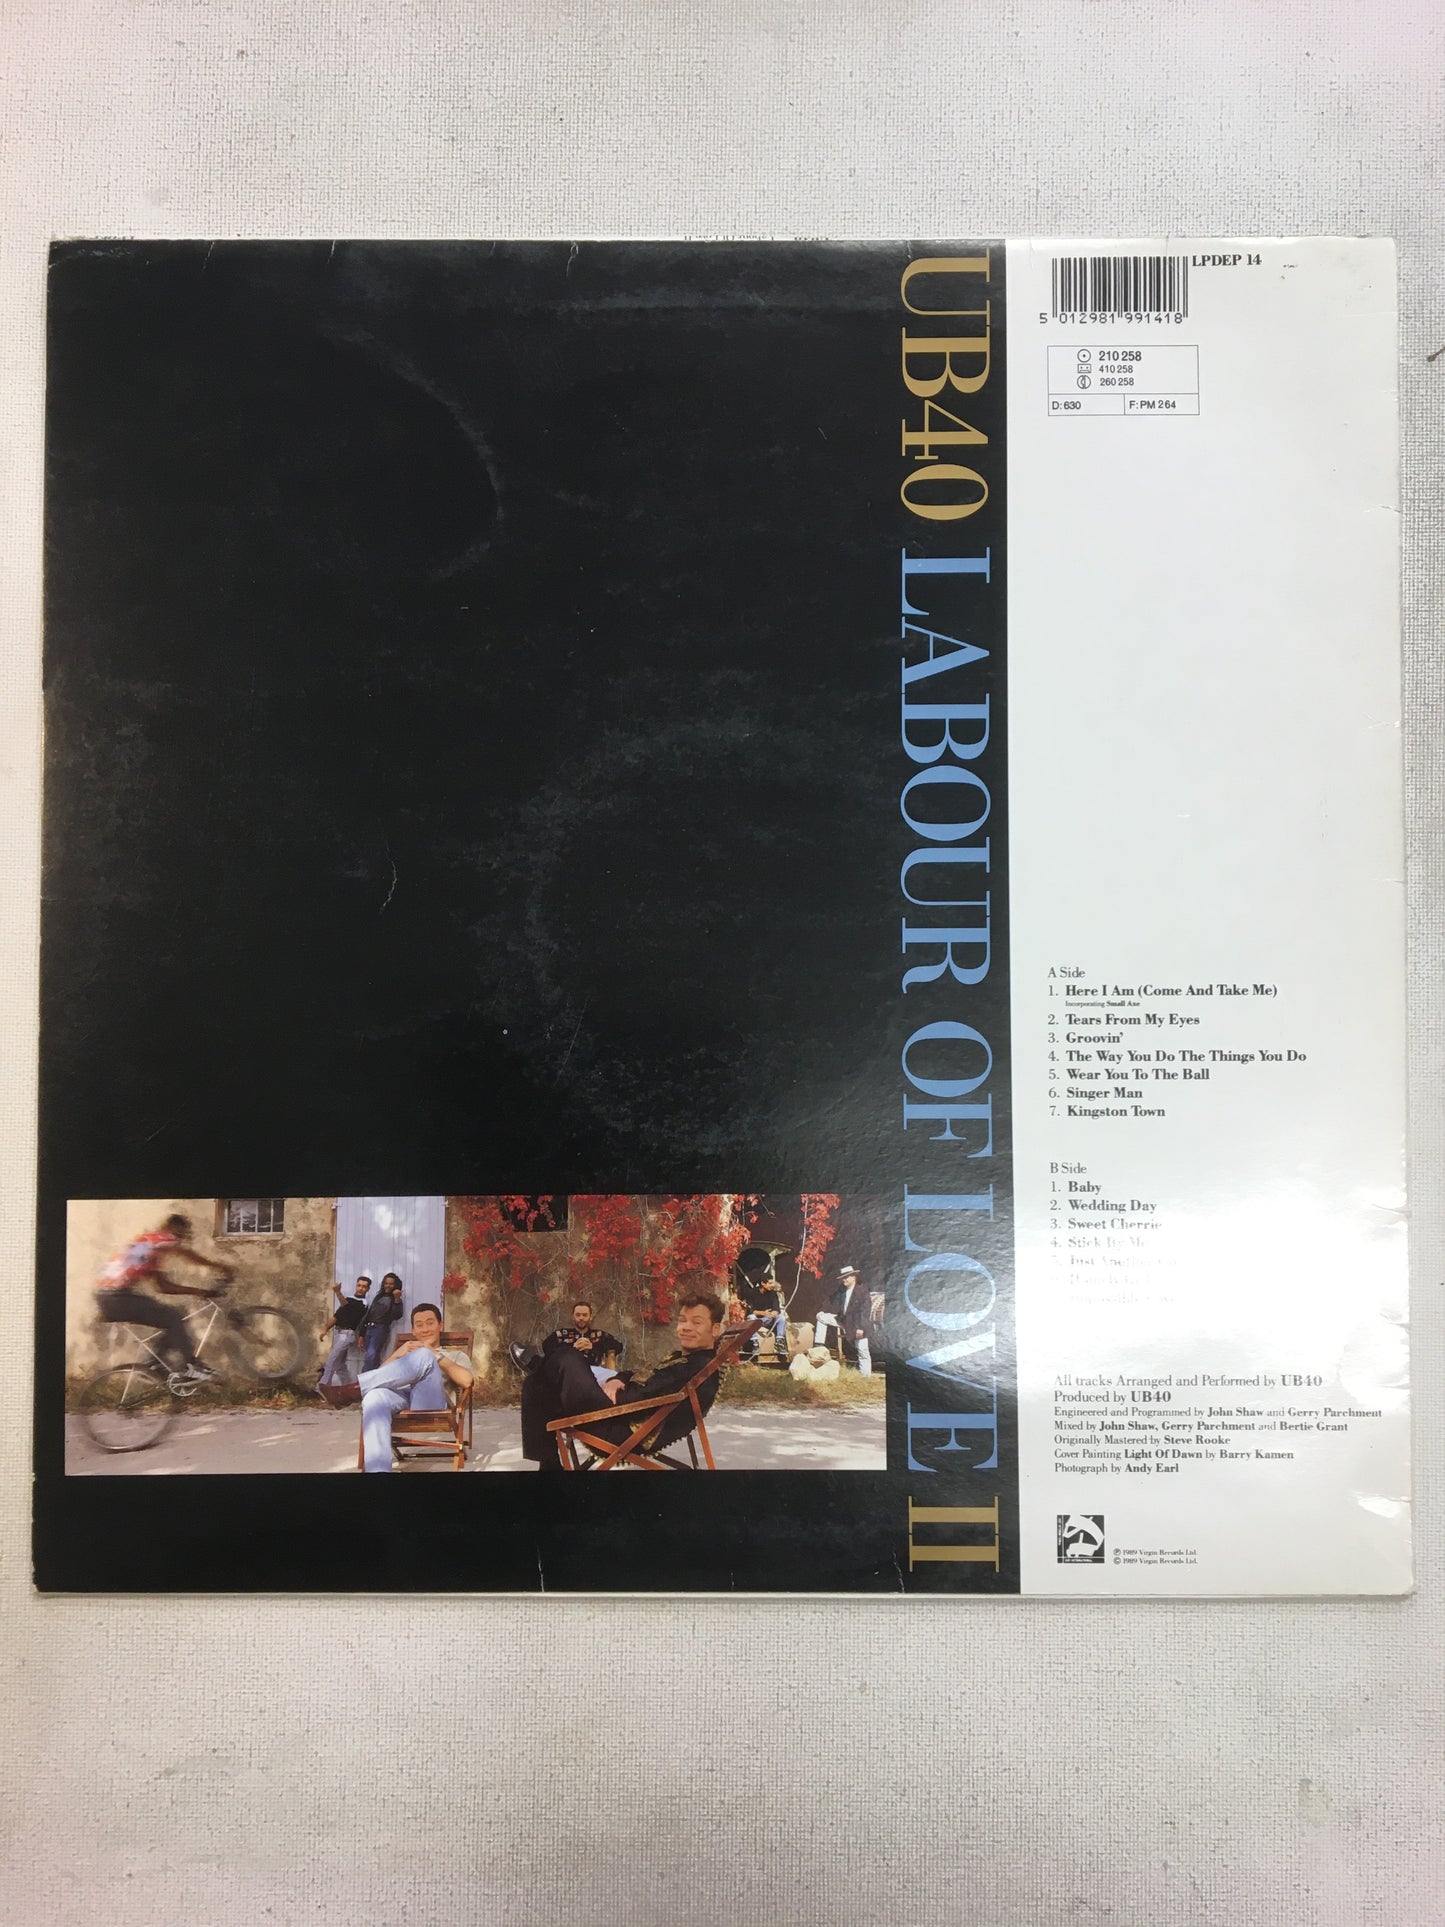 UB40: LABOUR OF LOVE II 1LP VINYL RECORD (1989)